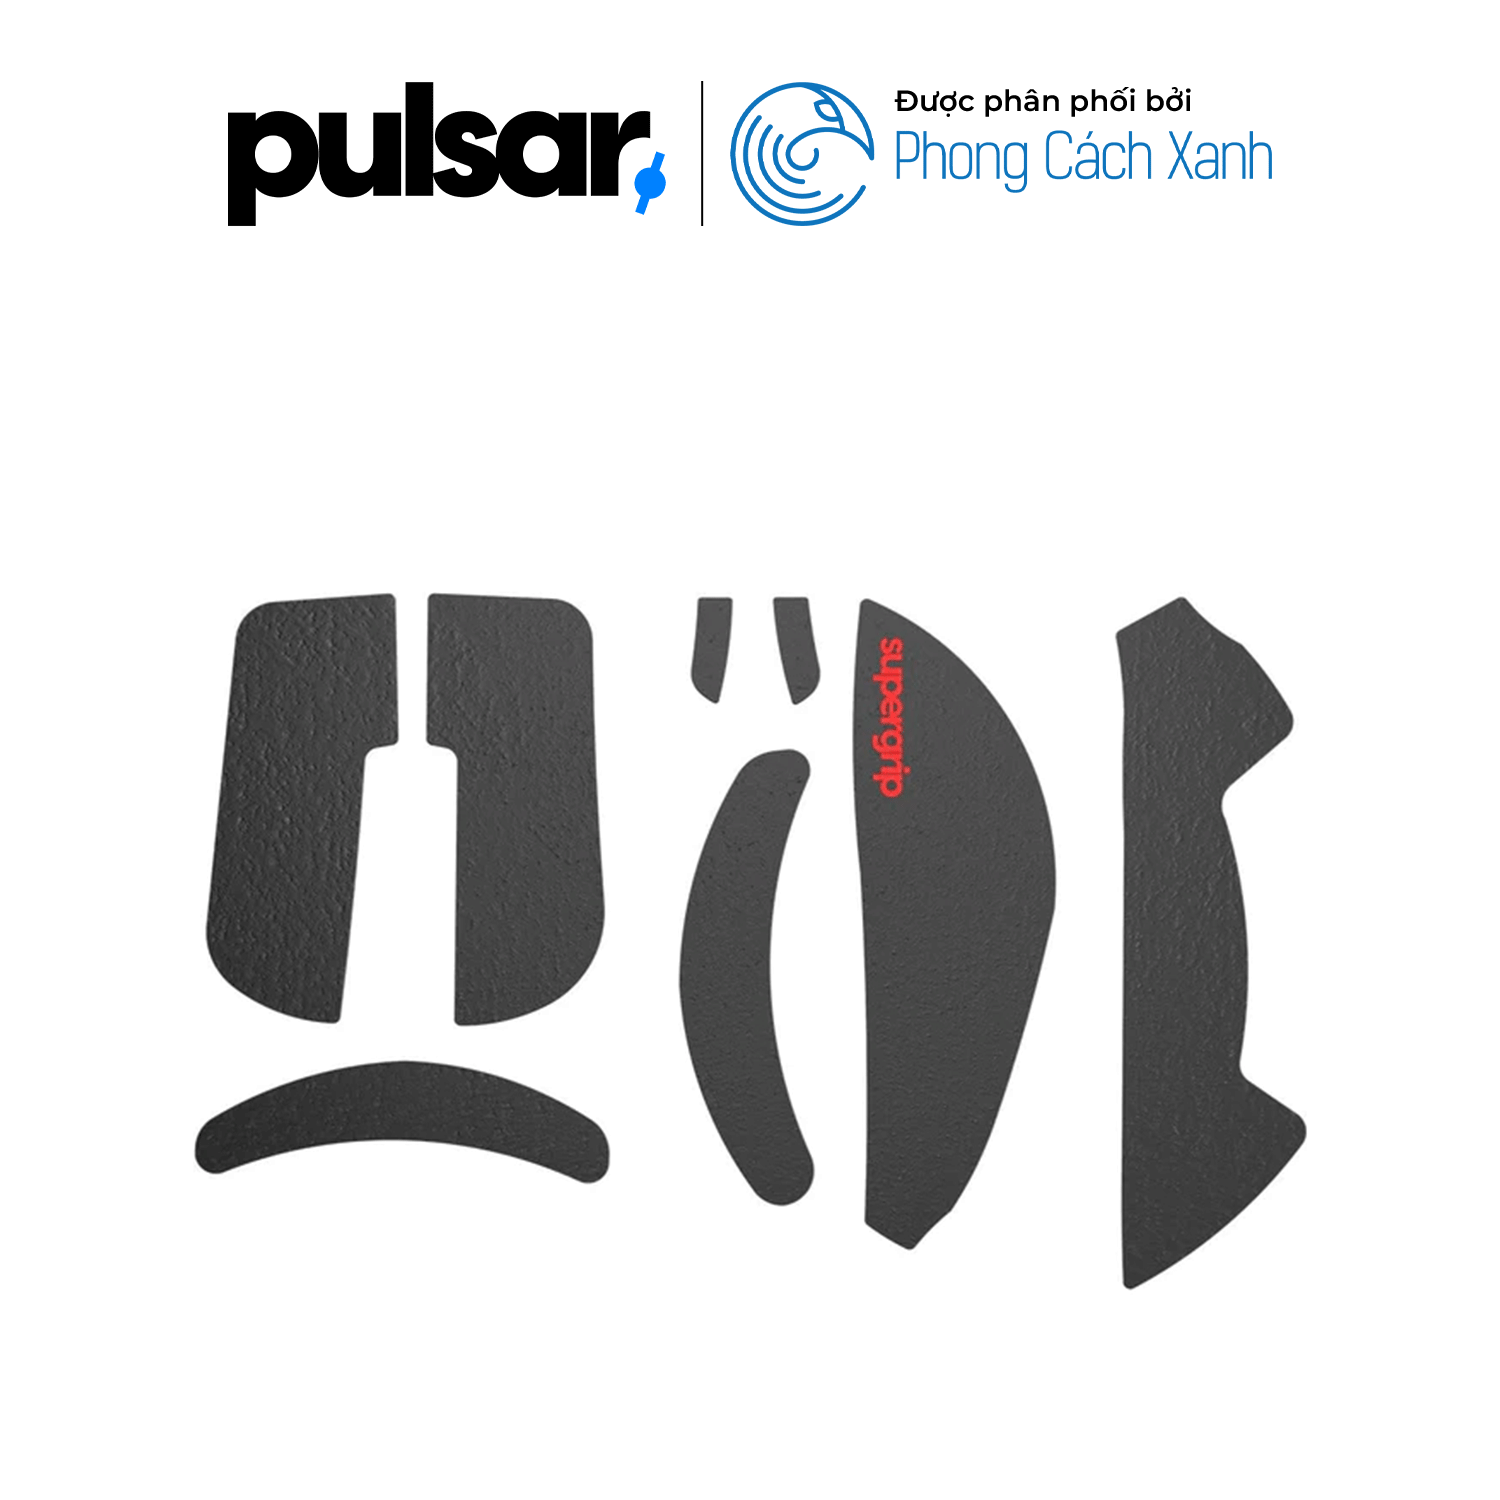 Miếng dán chống trượt Pulsar Supergrip - Grip Tape Precut for Xlite V3 Size Large - Hàng Chính Hãng